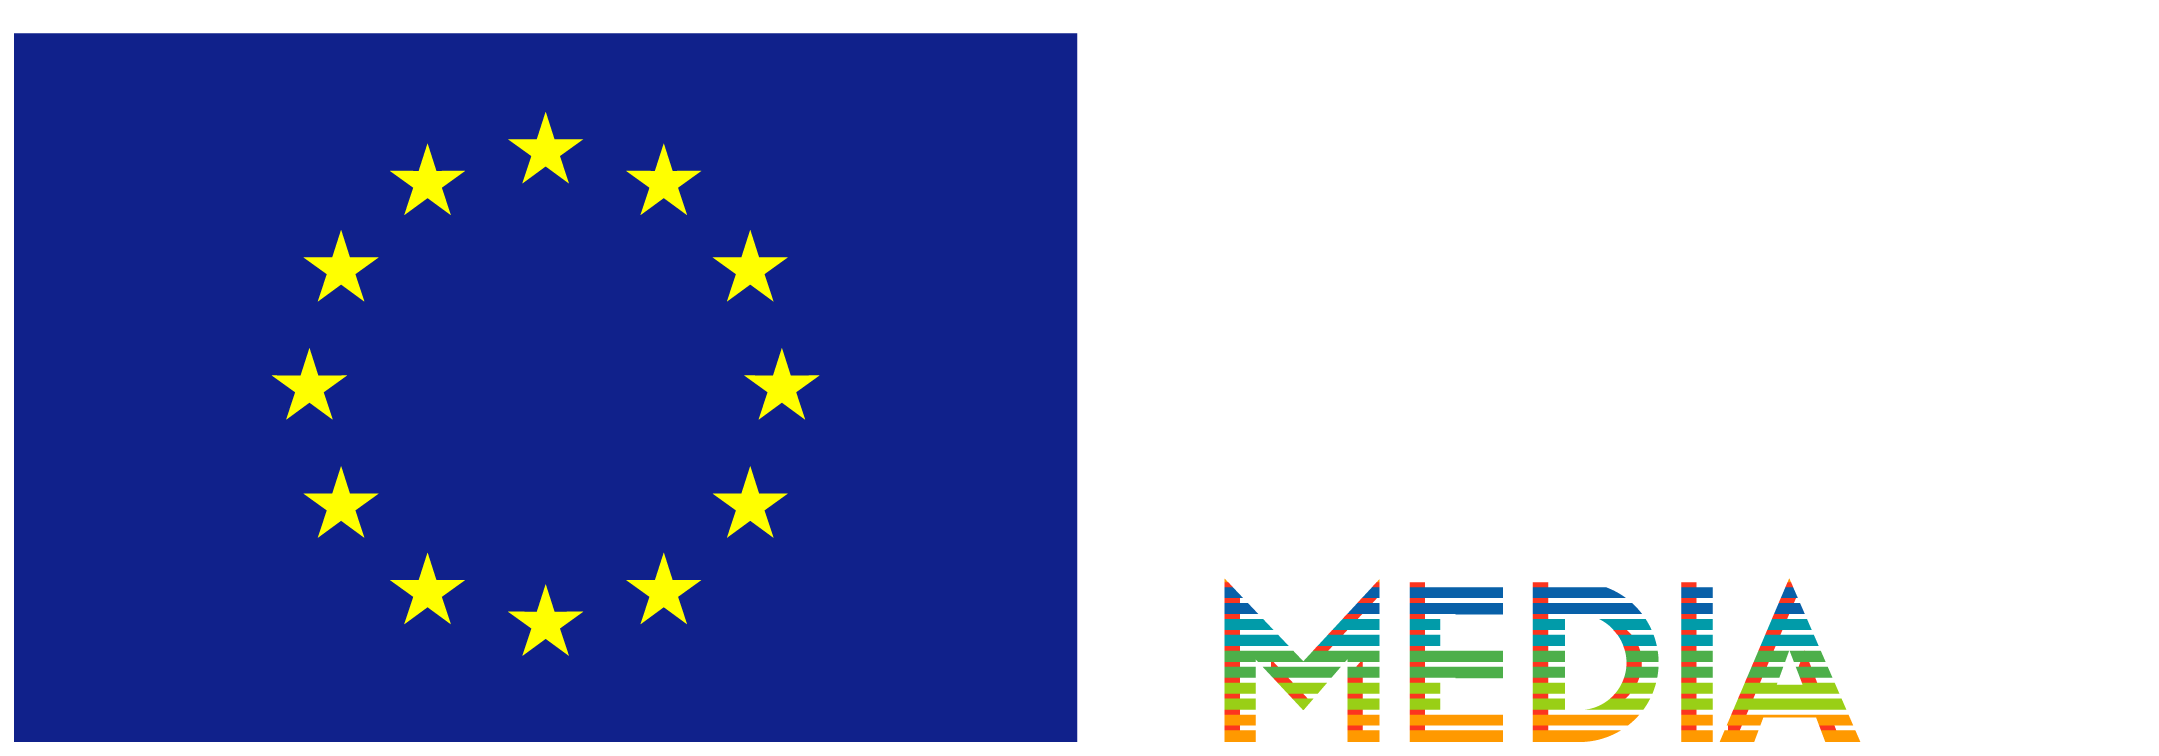 EU Flag Crea EU + MEDIA Neg FR